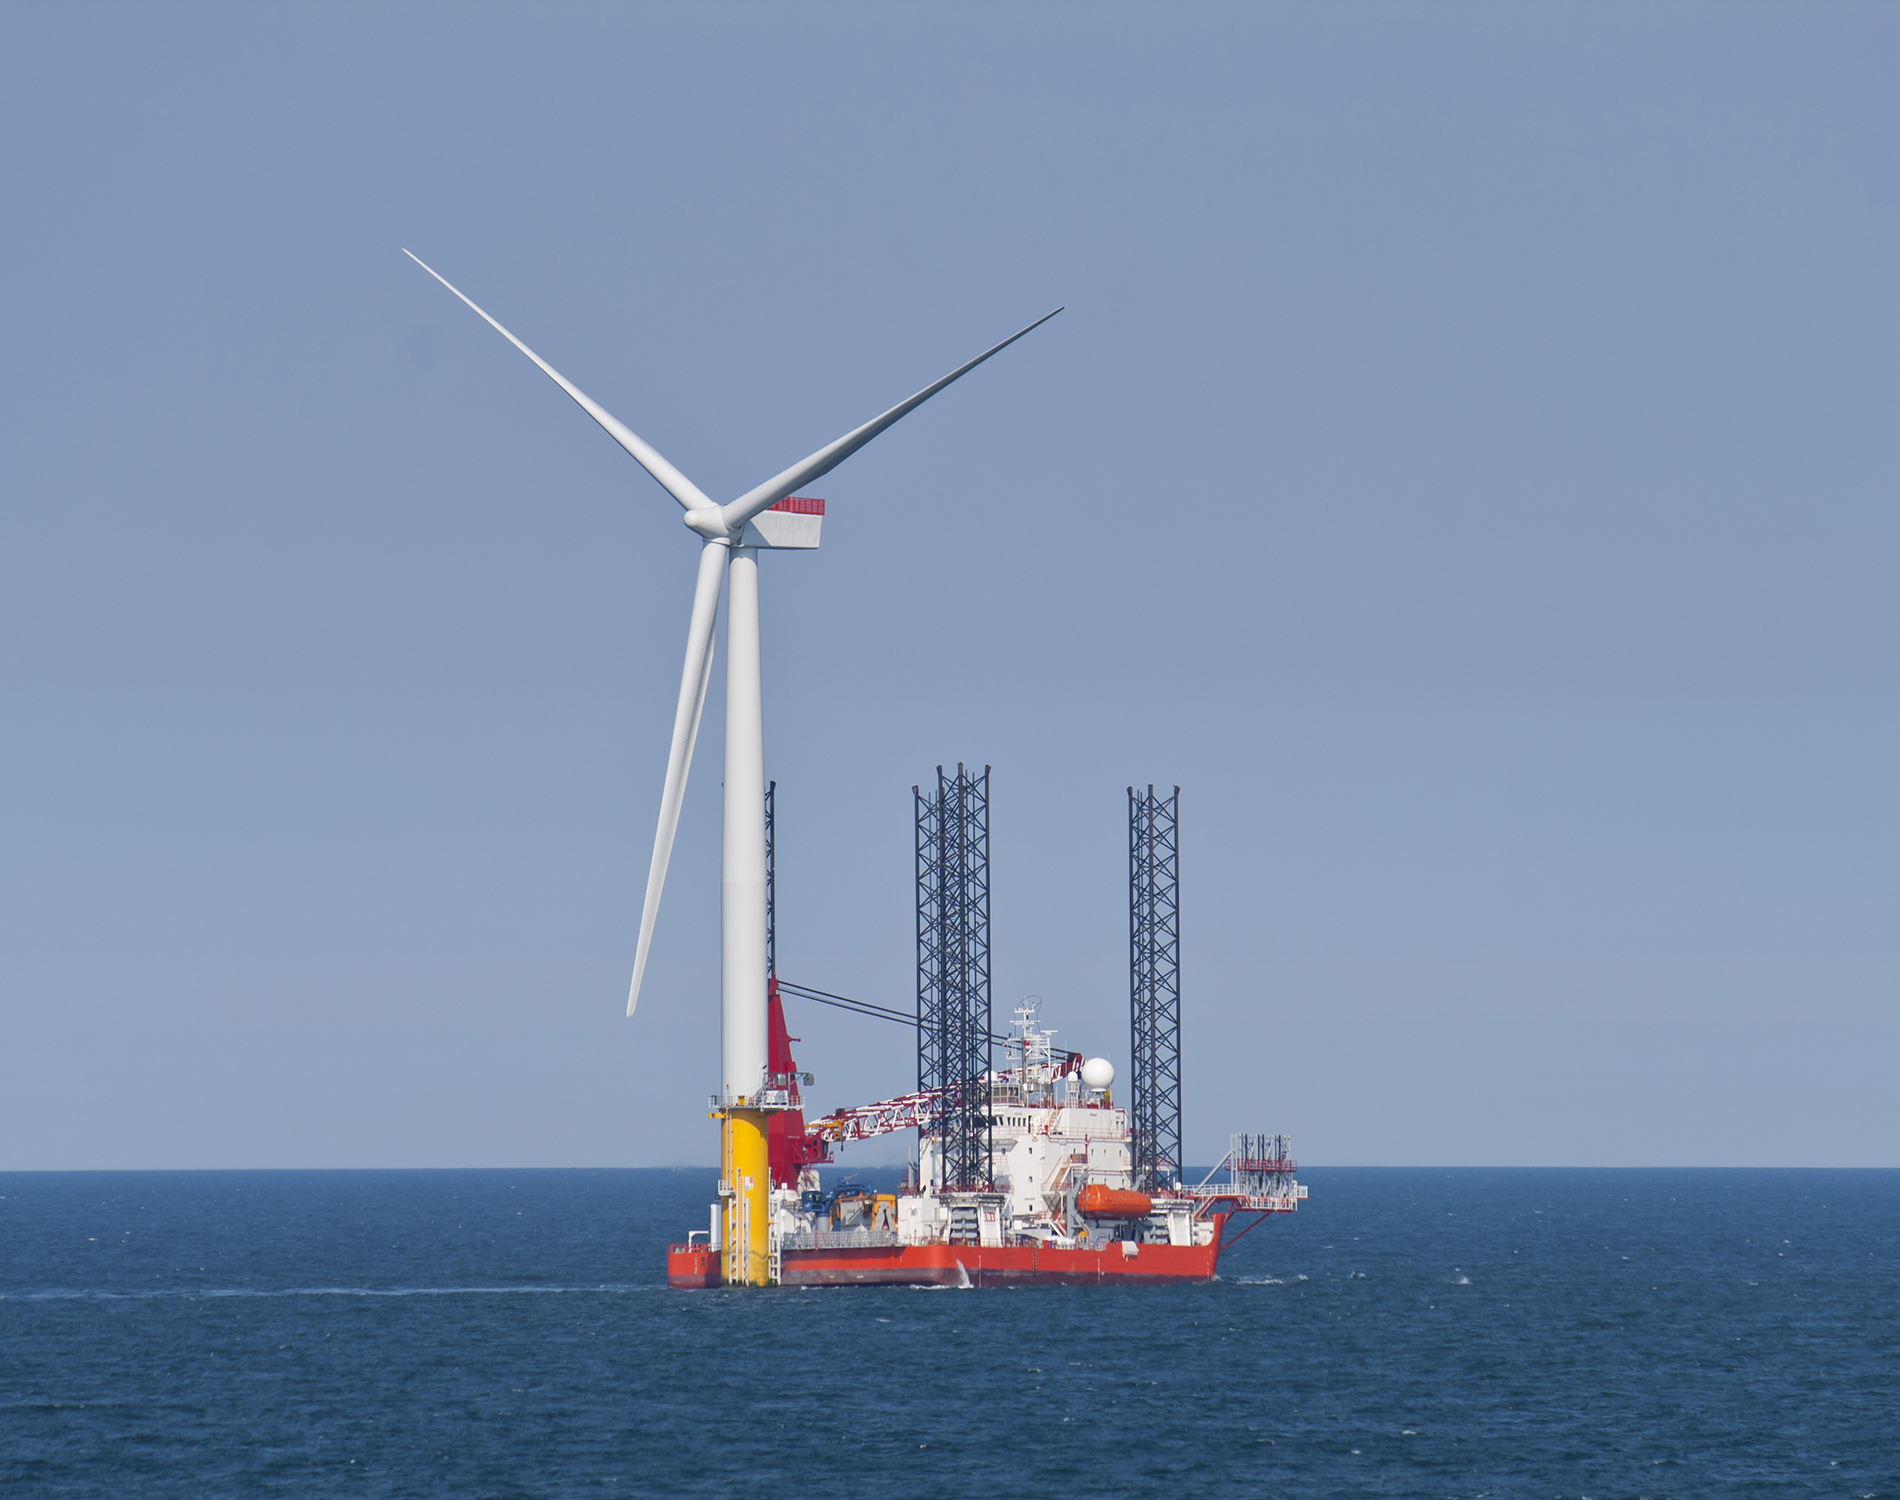 Off-shore wind turbine